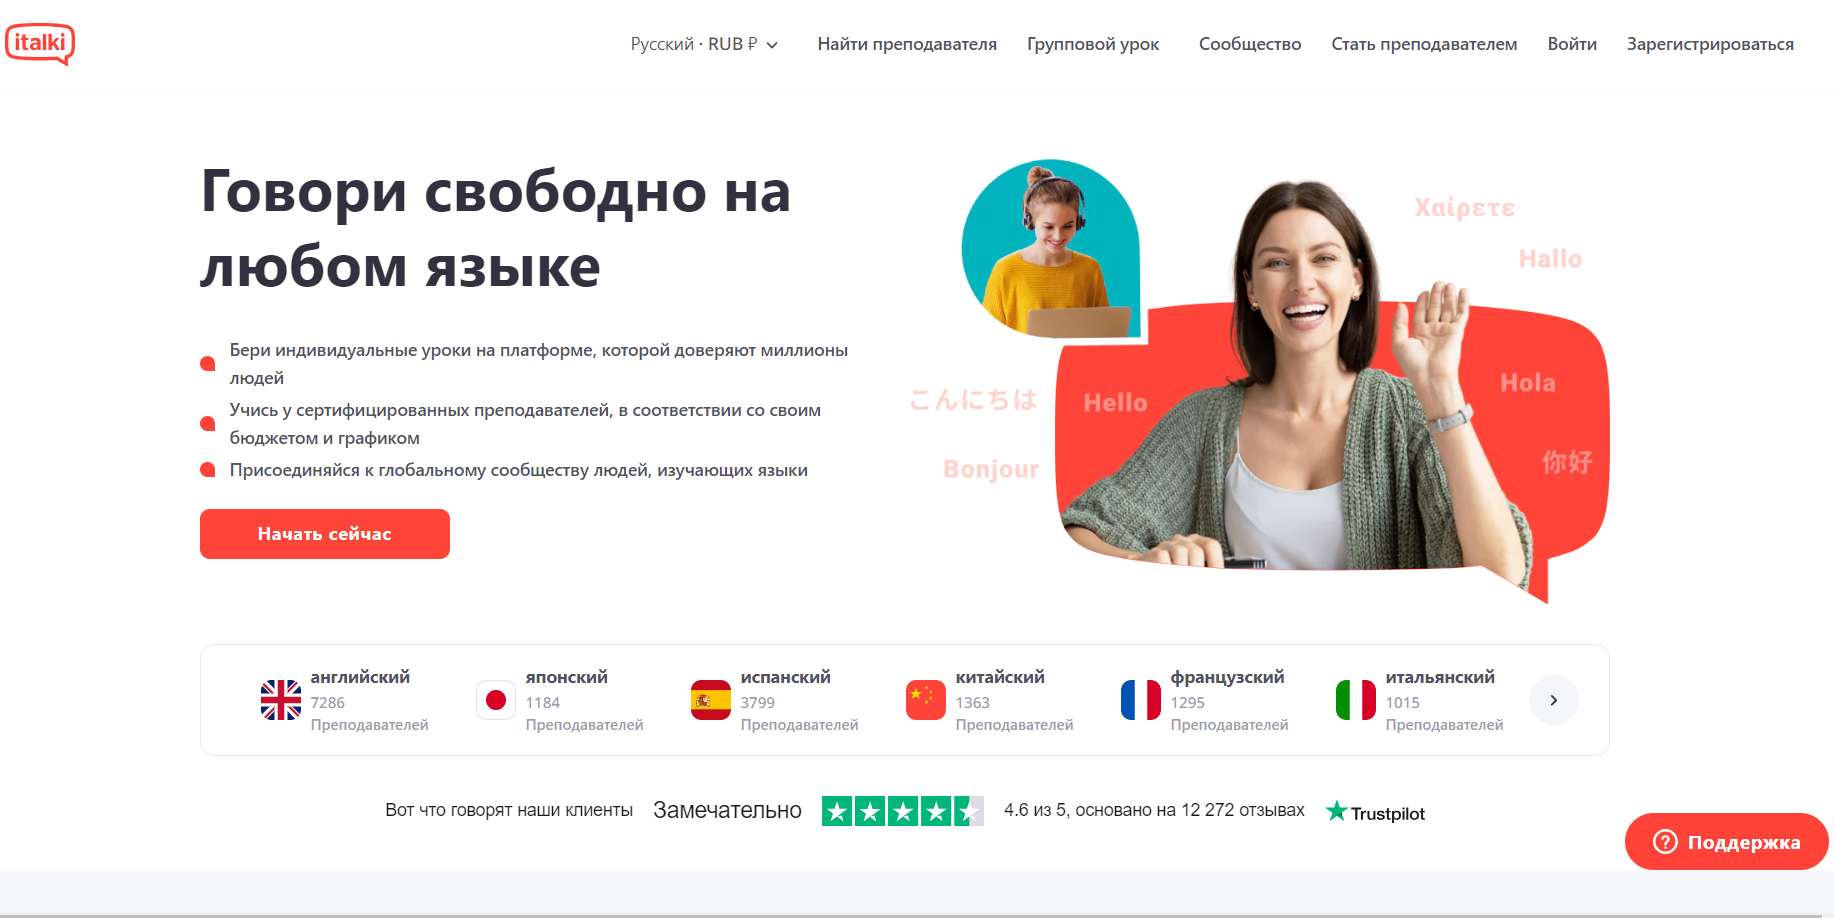 italki: официальный сайт сервиса для изучения языков